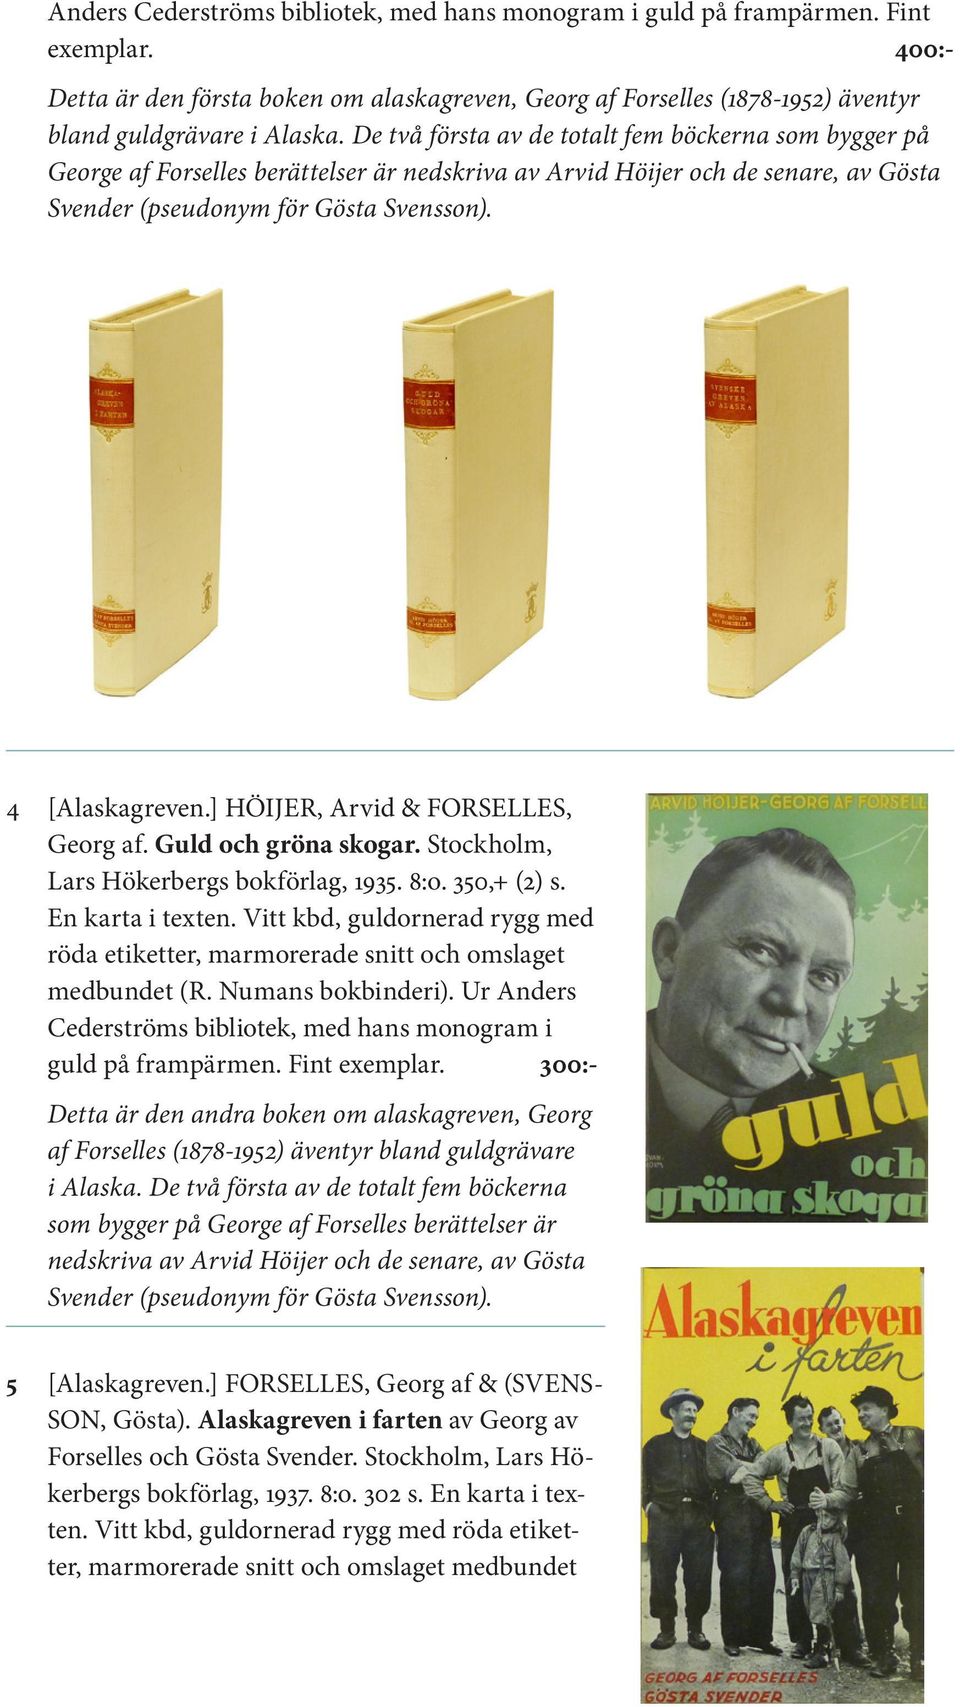 ] HÖIJER, Arvid & FORSELLES, Georg af. Guld och gröna skogar. Stockholm, Lars Hökerbergs bokförlag, 1935. 8:o. 350,+ (2) s. En karta i texten.